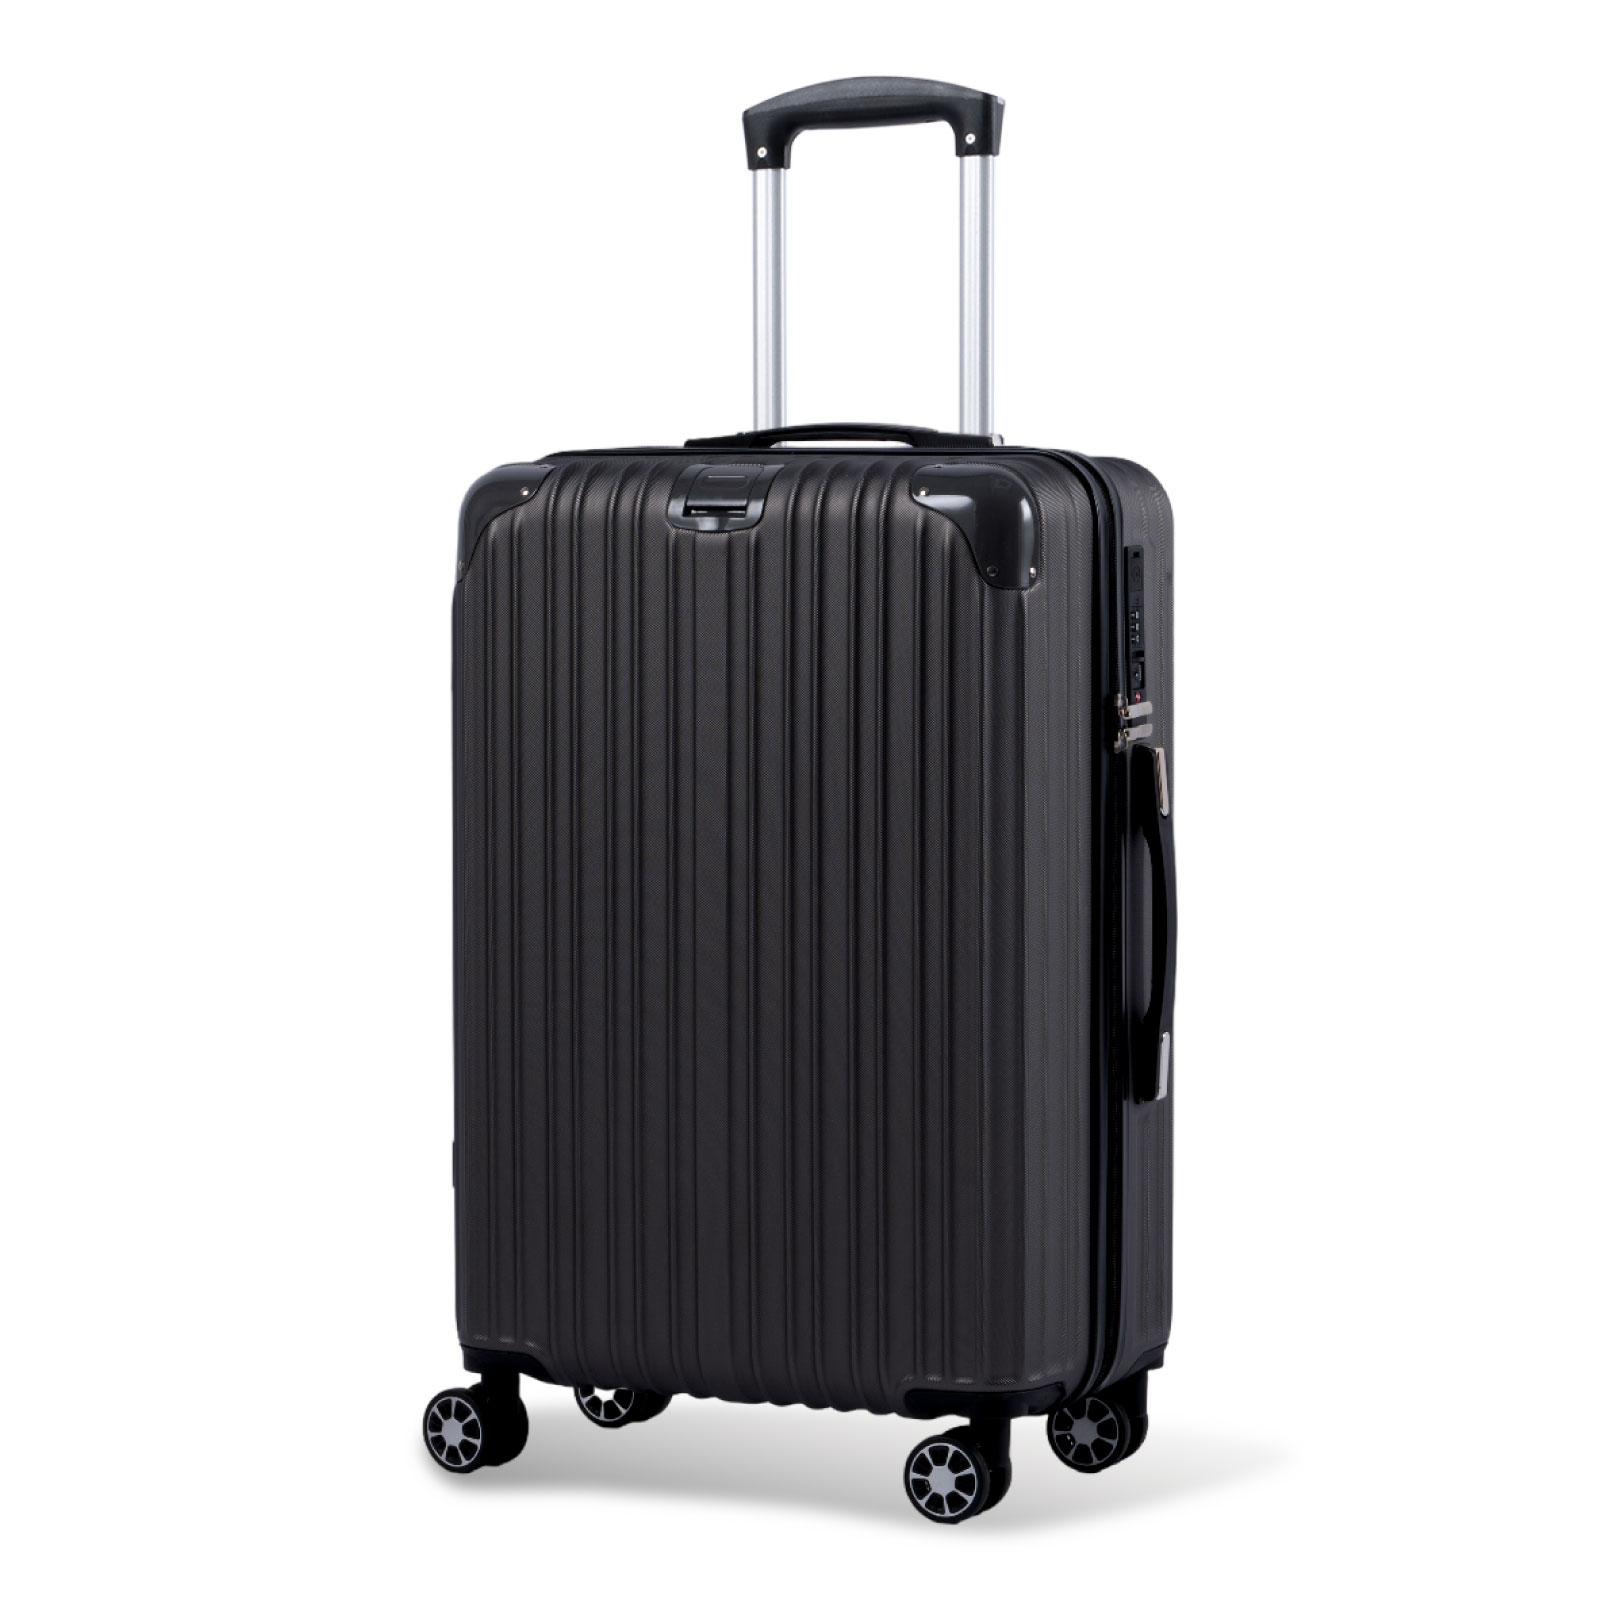 スーツケース USBポート付き キャリーケース Lサイズ キャリーバッグ トランク 7-14日泊用 大型 軽量 360度回転 大容量 ファスナー式  旅行 ビジネス sc113-28